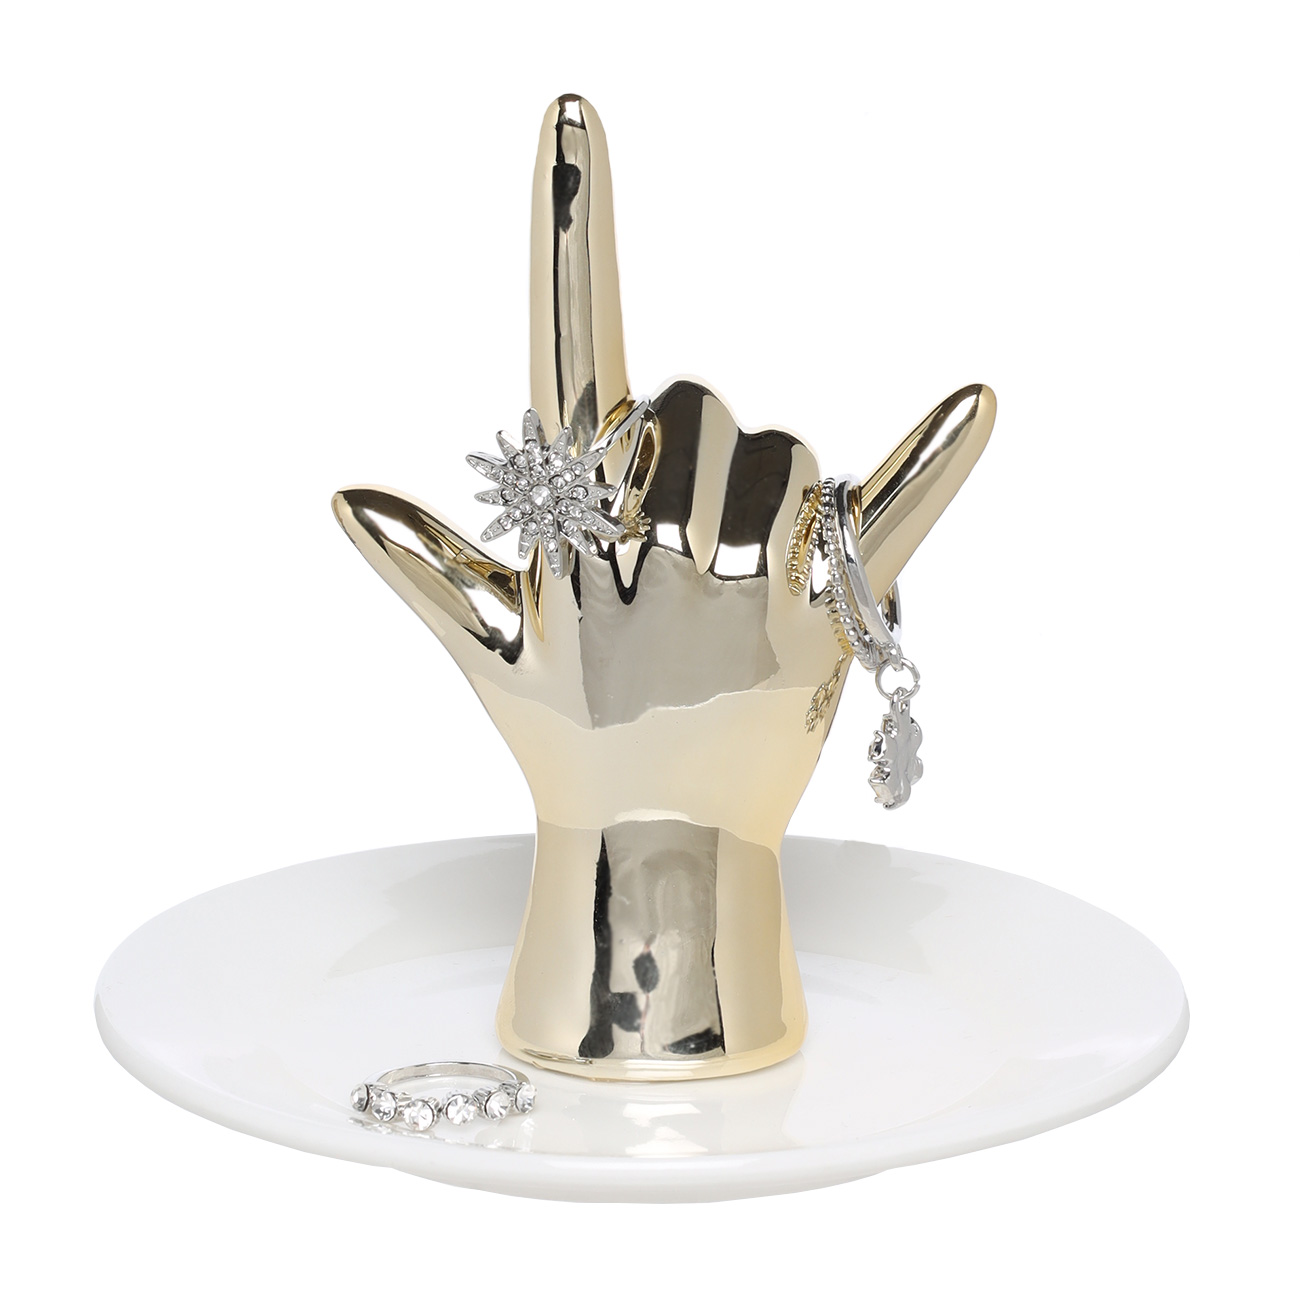 Держатель для украшений, 11 см, керамика/металл, бело-золотистый, Рука, Hand